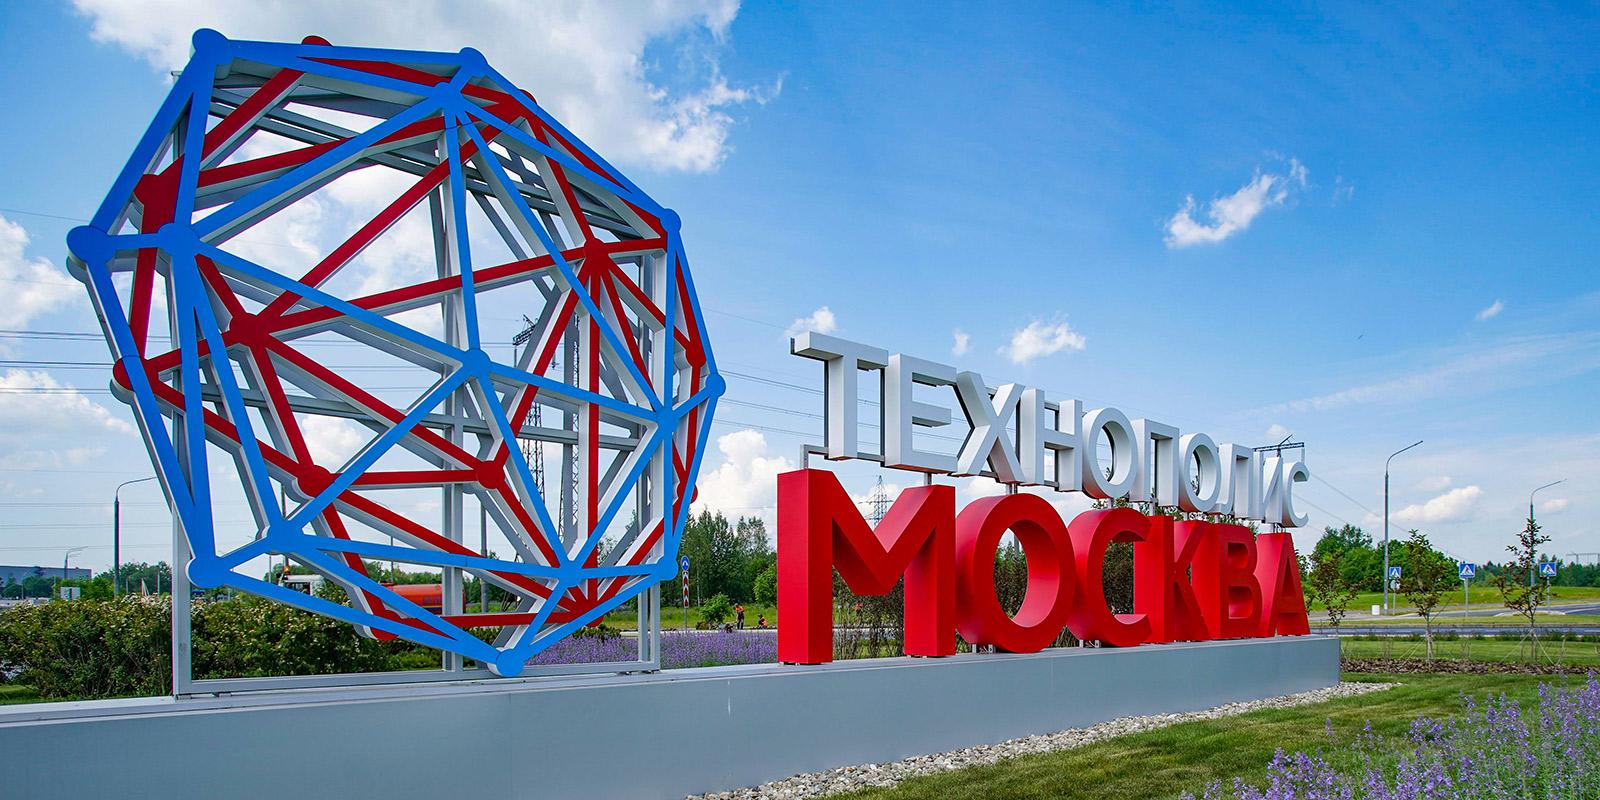 Технополис Москва - один из крупнейших работодателей столицы